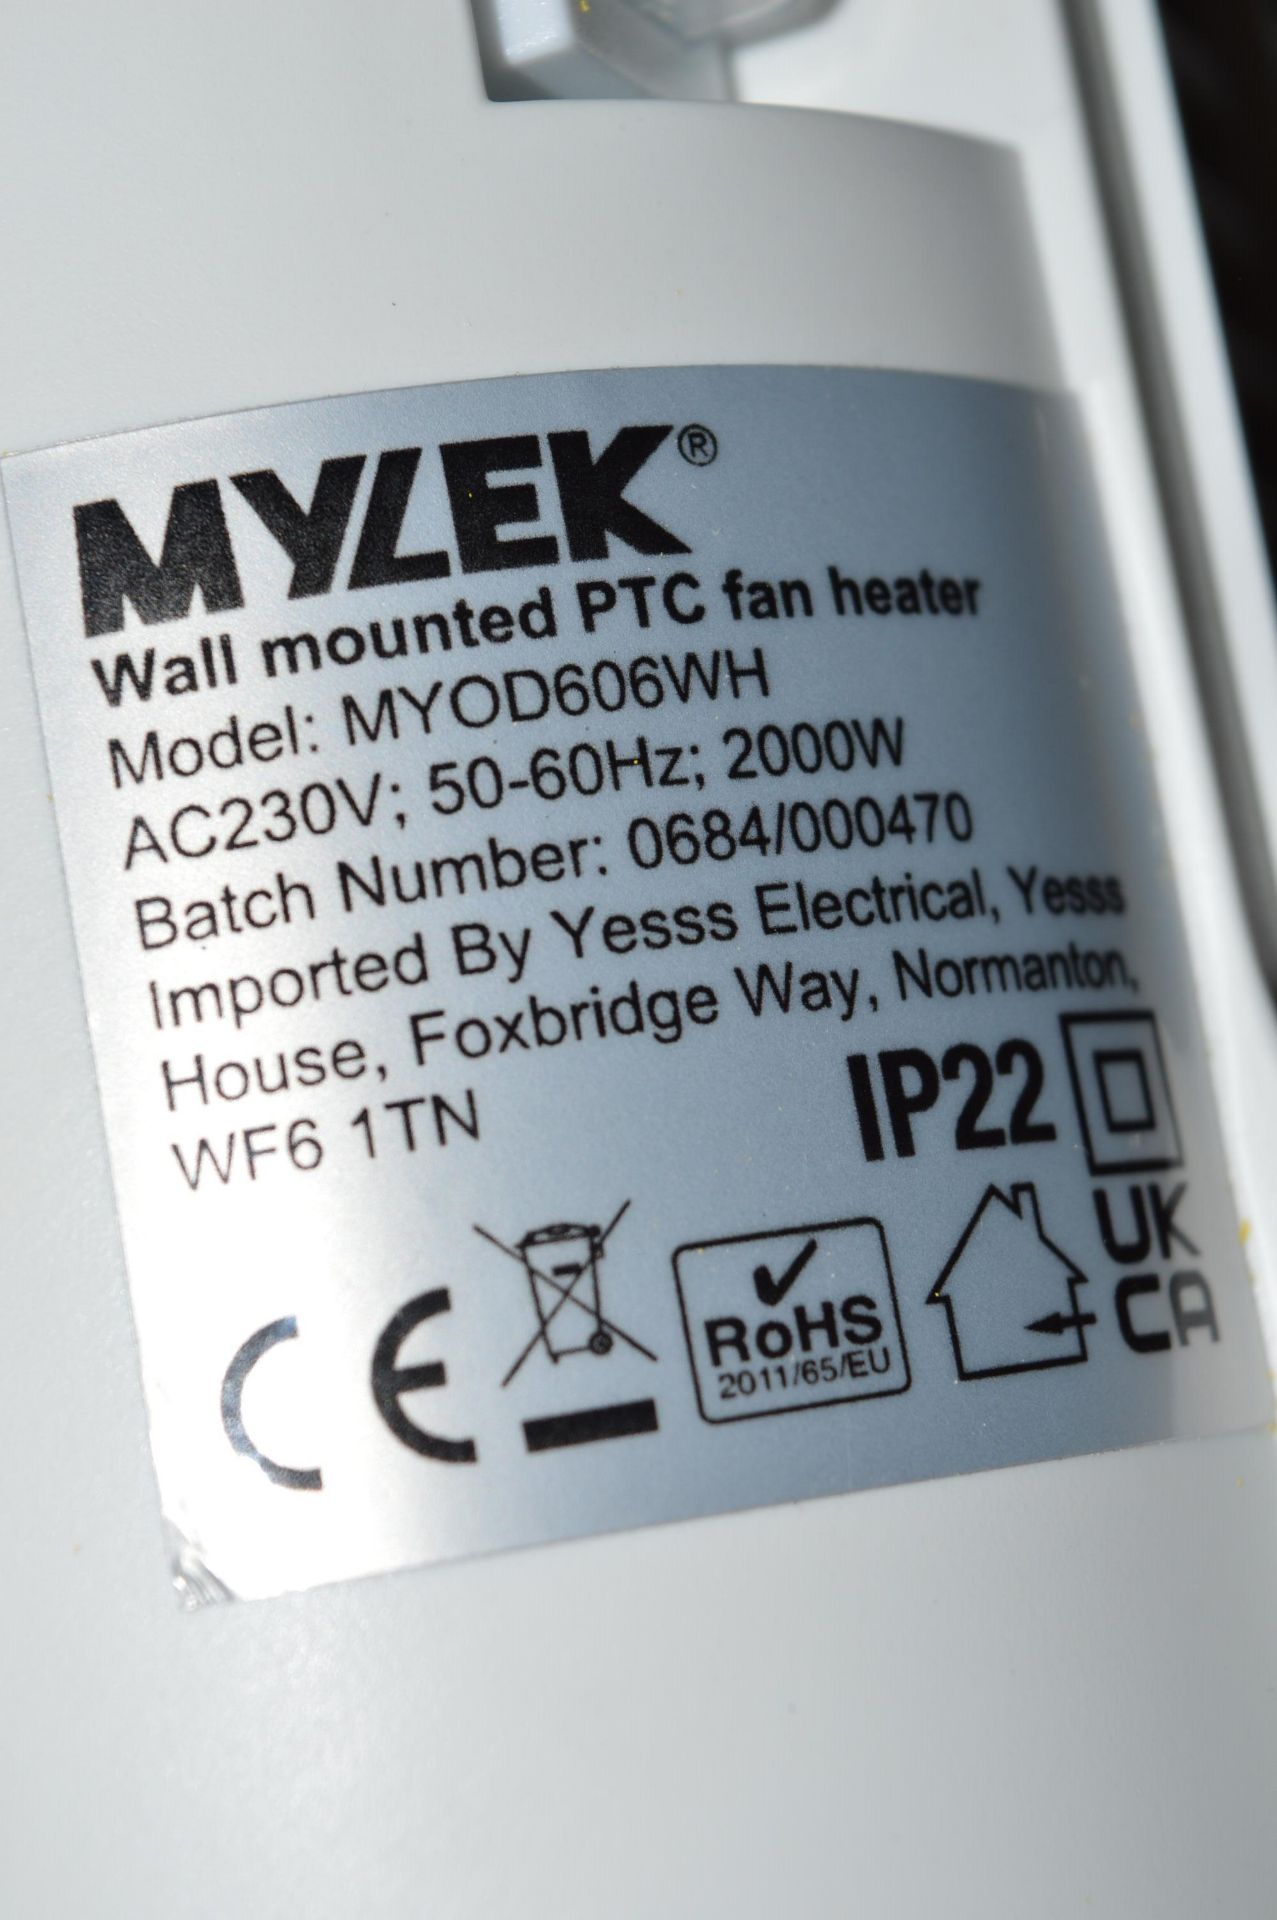 *Wall Mounted PTC Fan Heater - Image 2 of 2